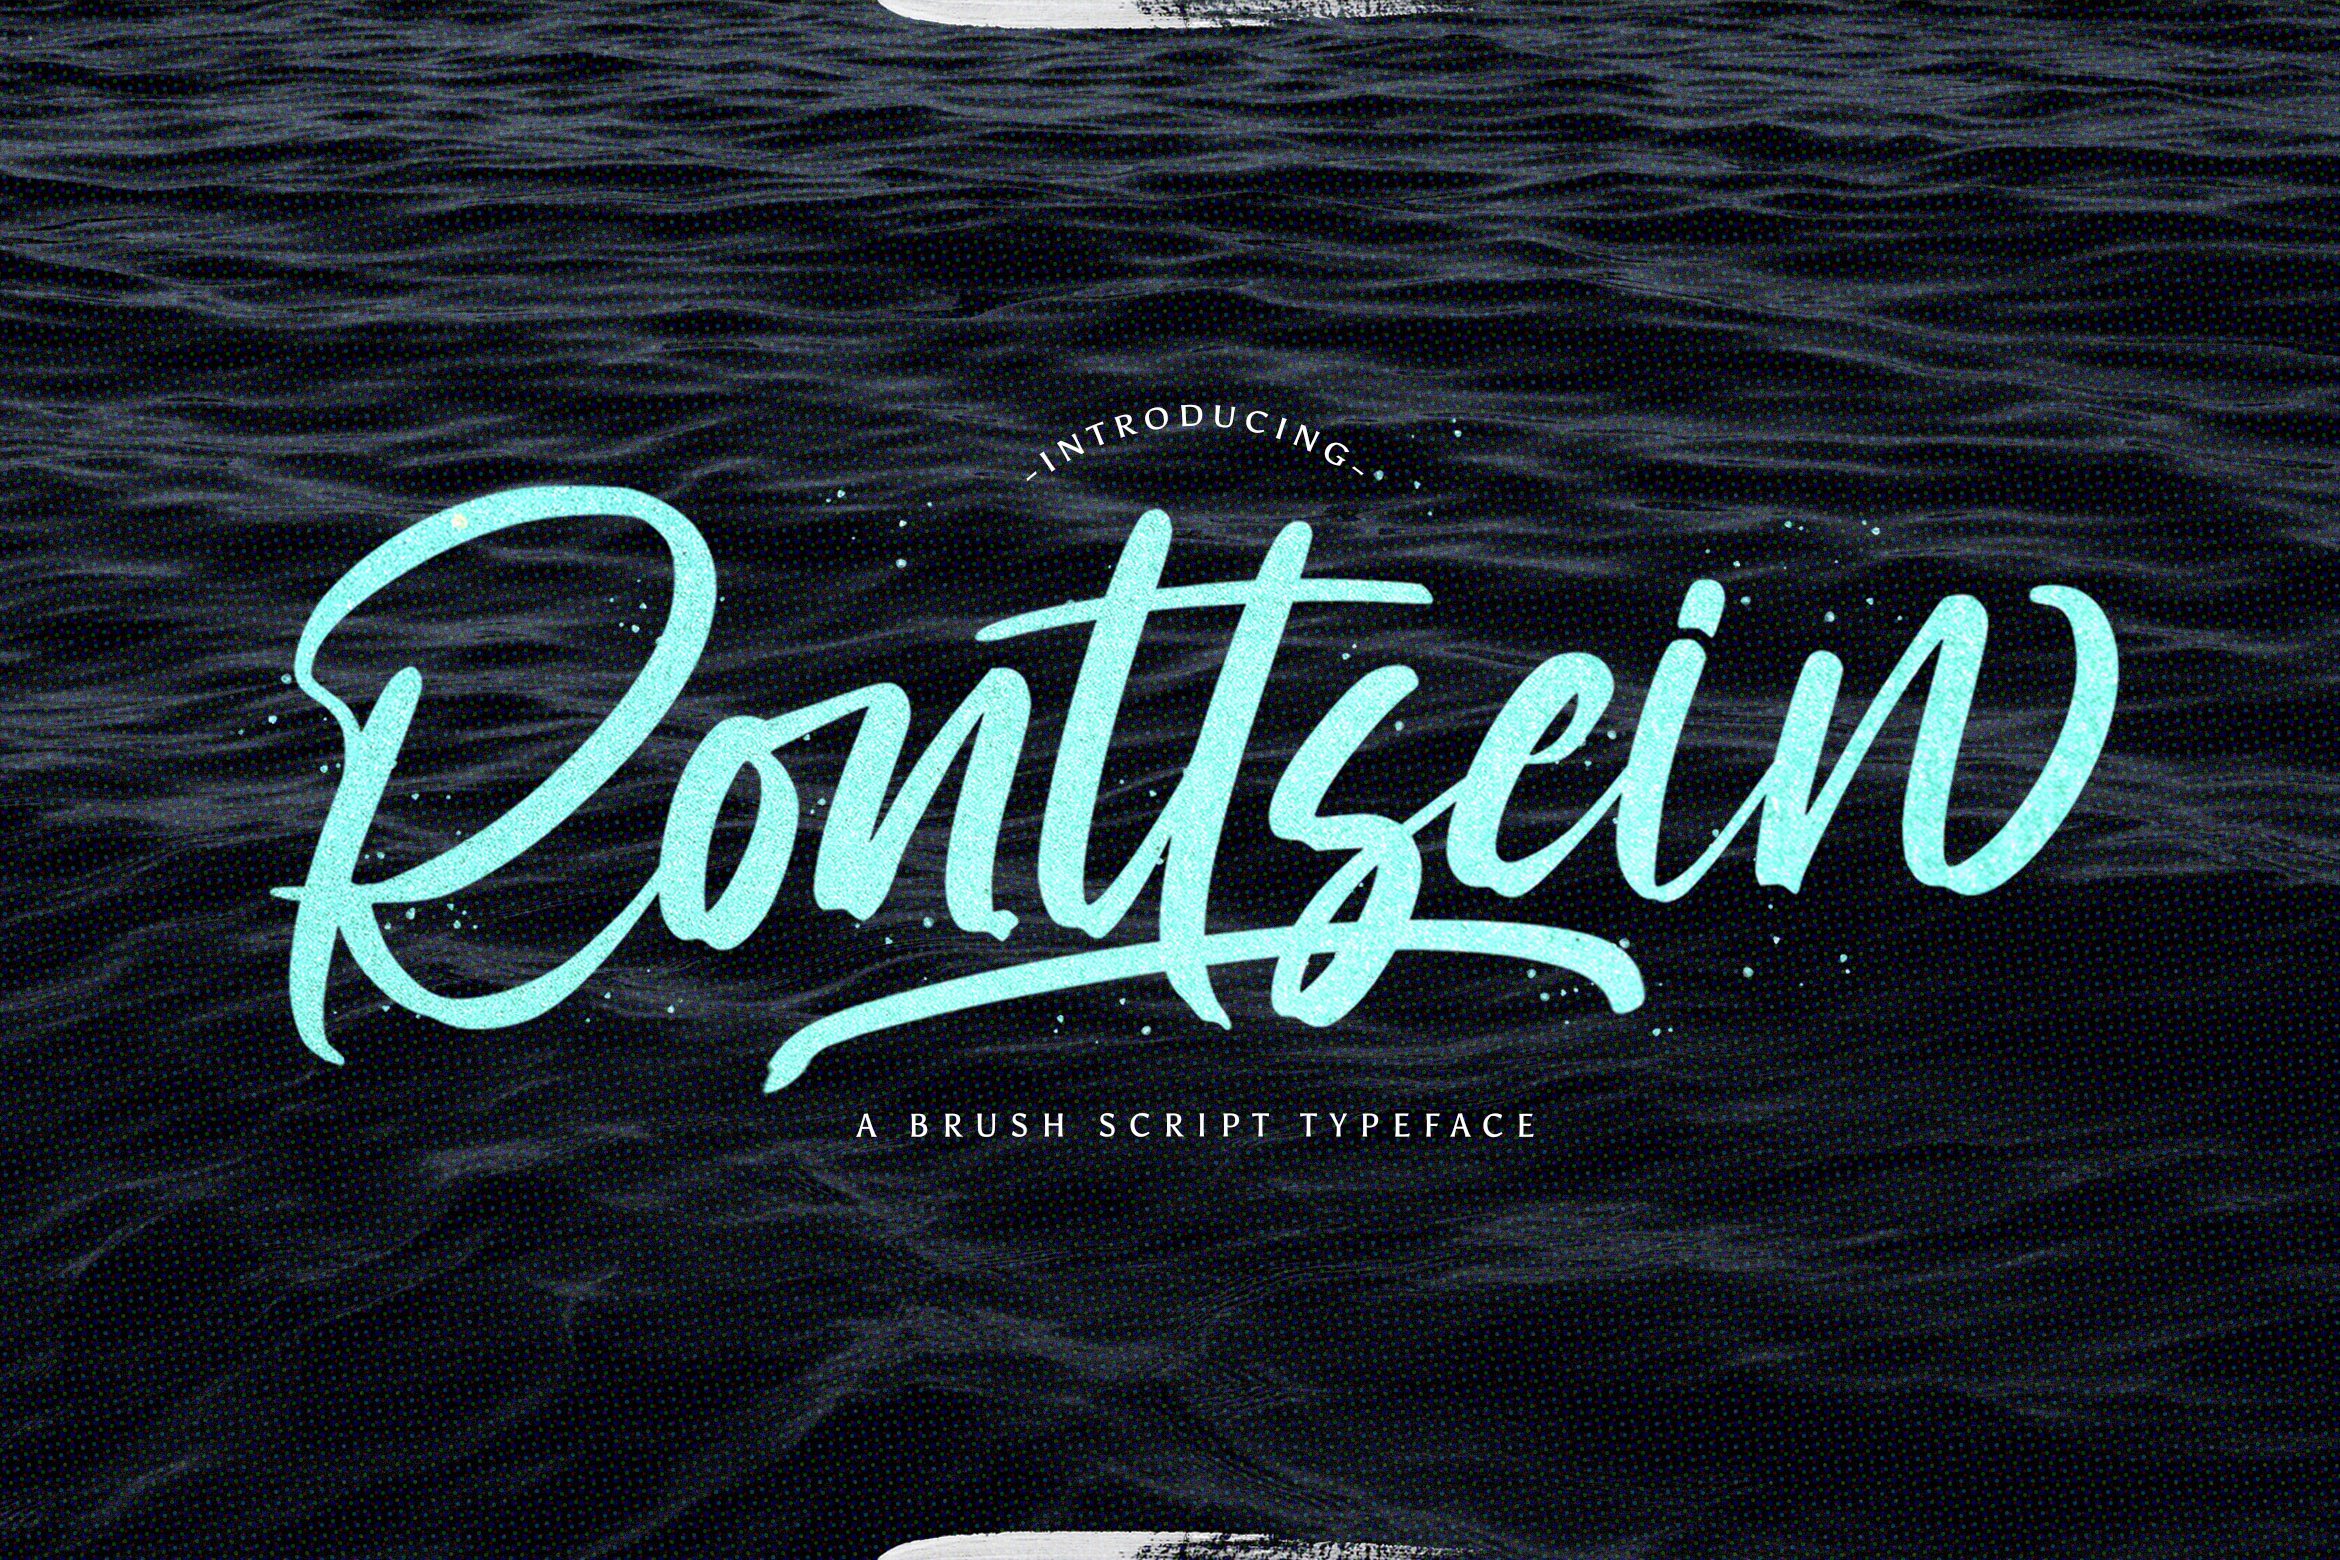 Ronttsein - Brush Script Font cover image.